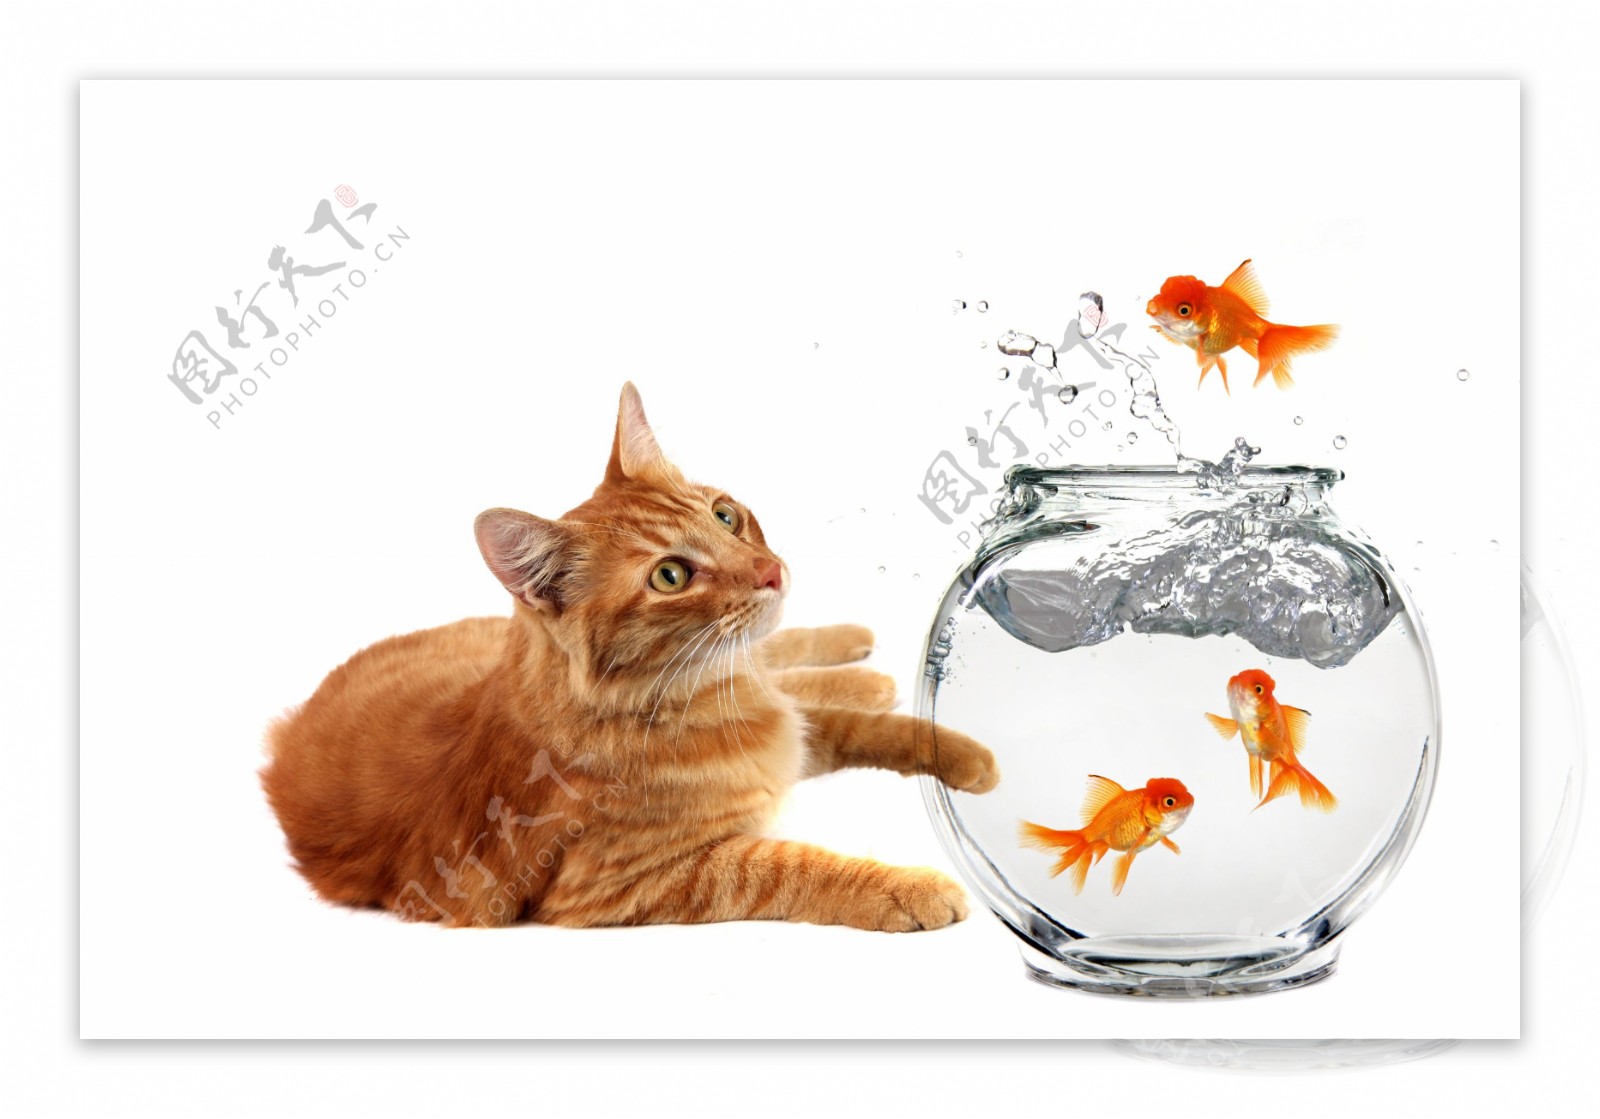 一只小猫蹲坐在鱼缸旁边清澈的浴缸里面有一只金鱼